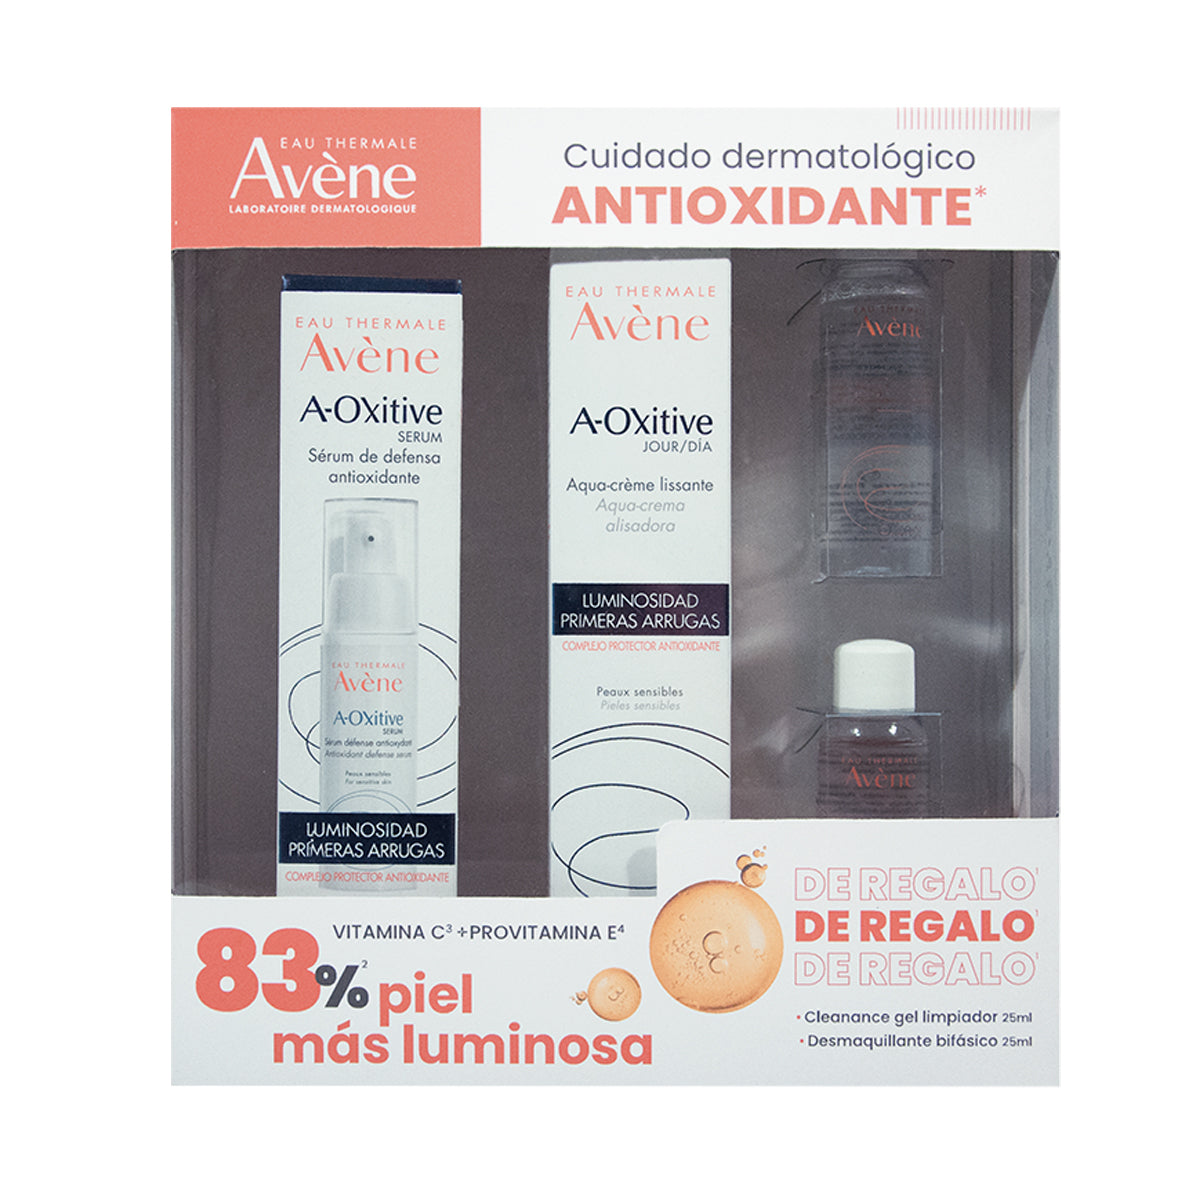 Avene Kit antiedad A-oxitive suero 30ml + A-oxitive crema de día 30ml + Cleanance gel 25ml + Desmaquillante bifásico 25ml.